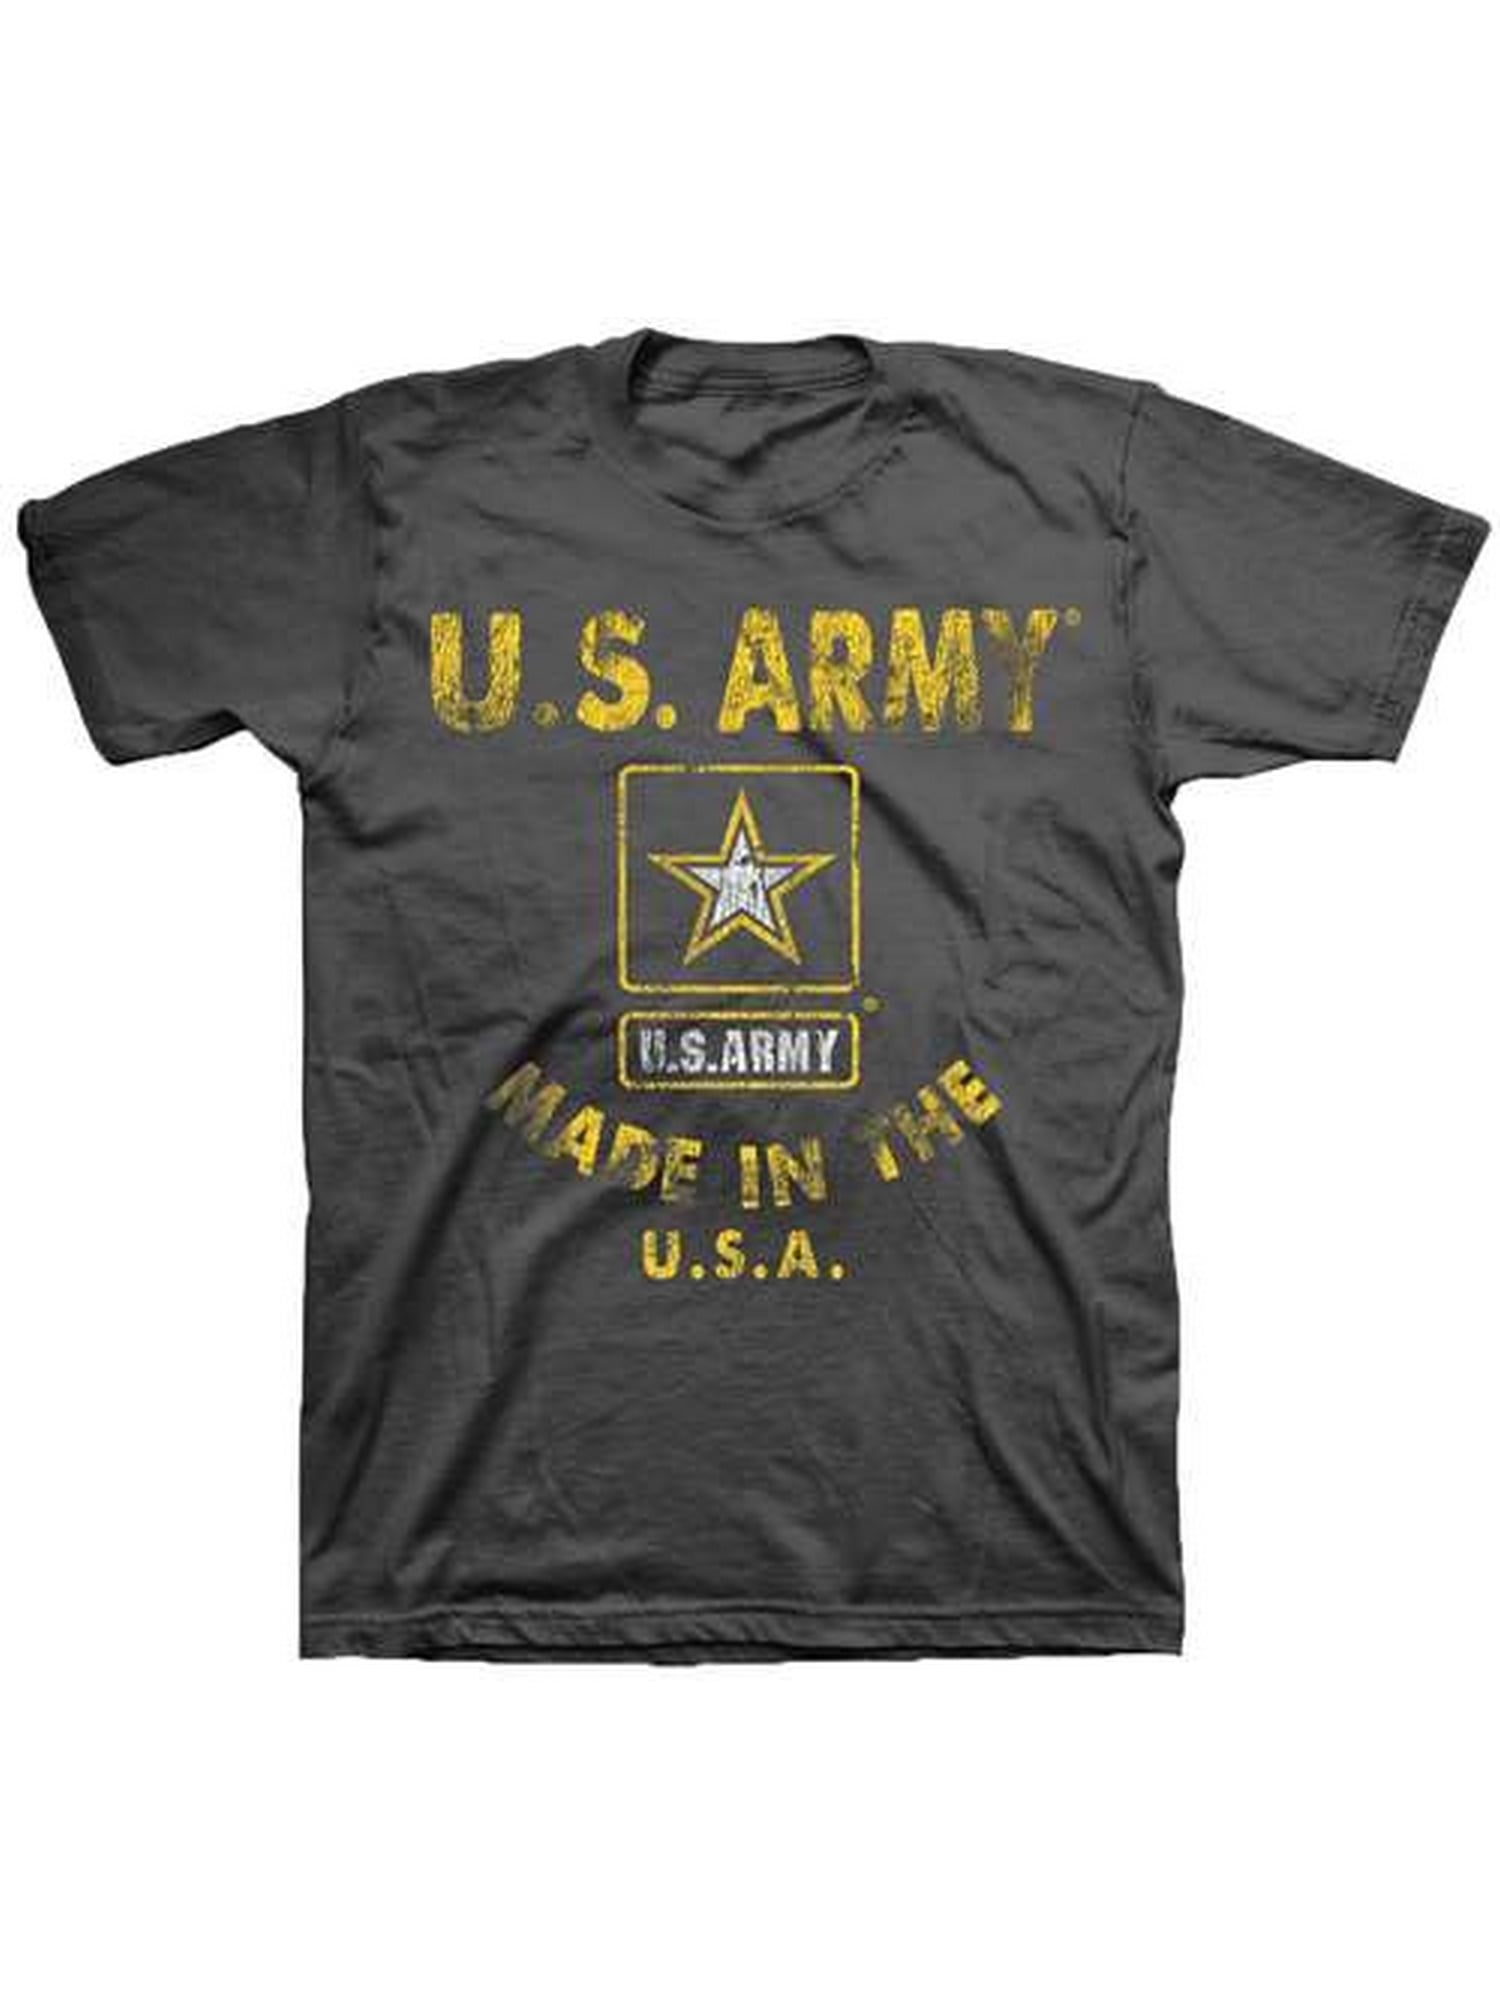 Black Ink Design U.S. Army Made in the U.S.A. Men's T-Shirt - Walmart.com